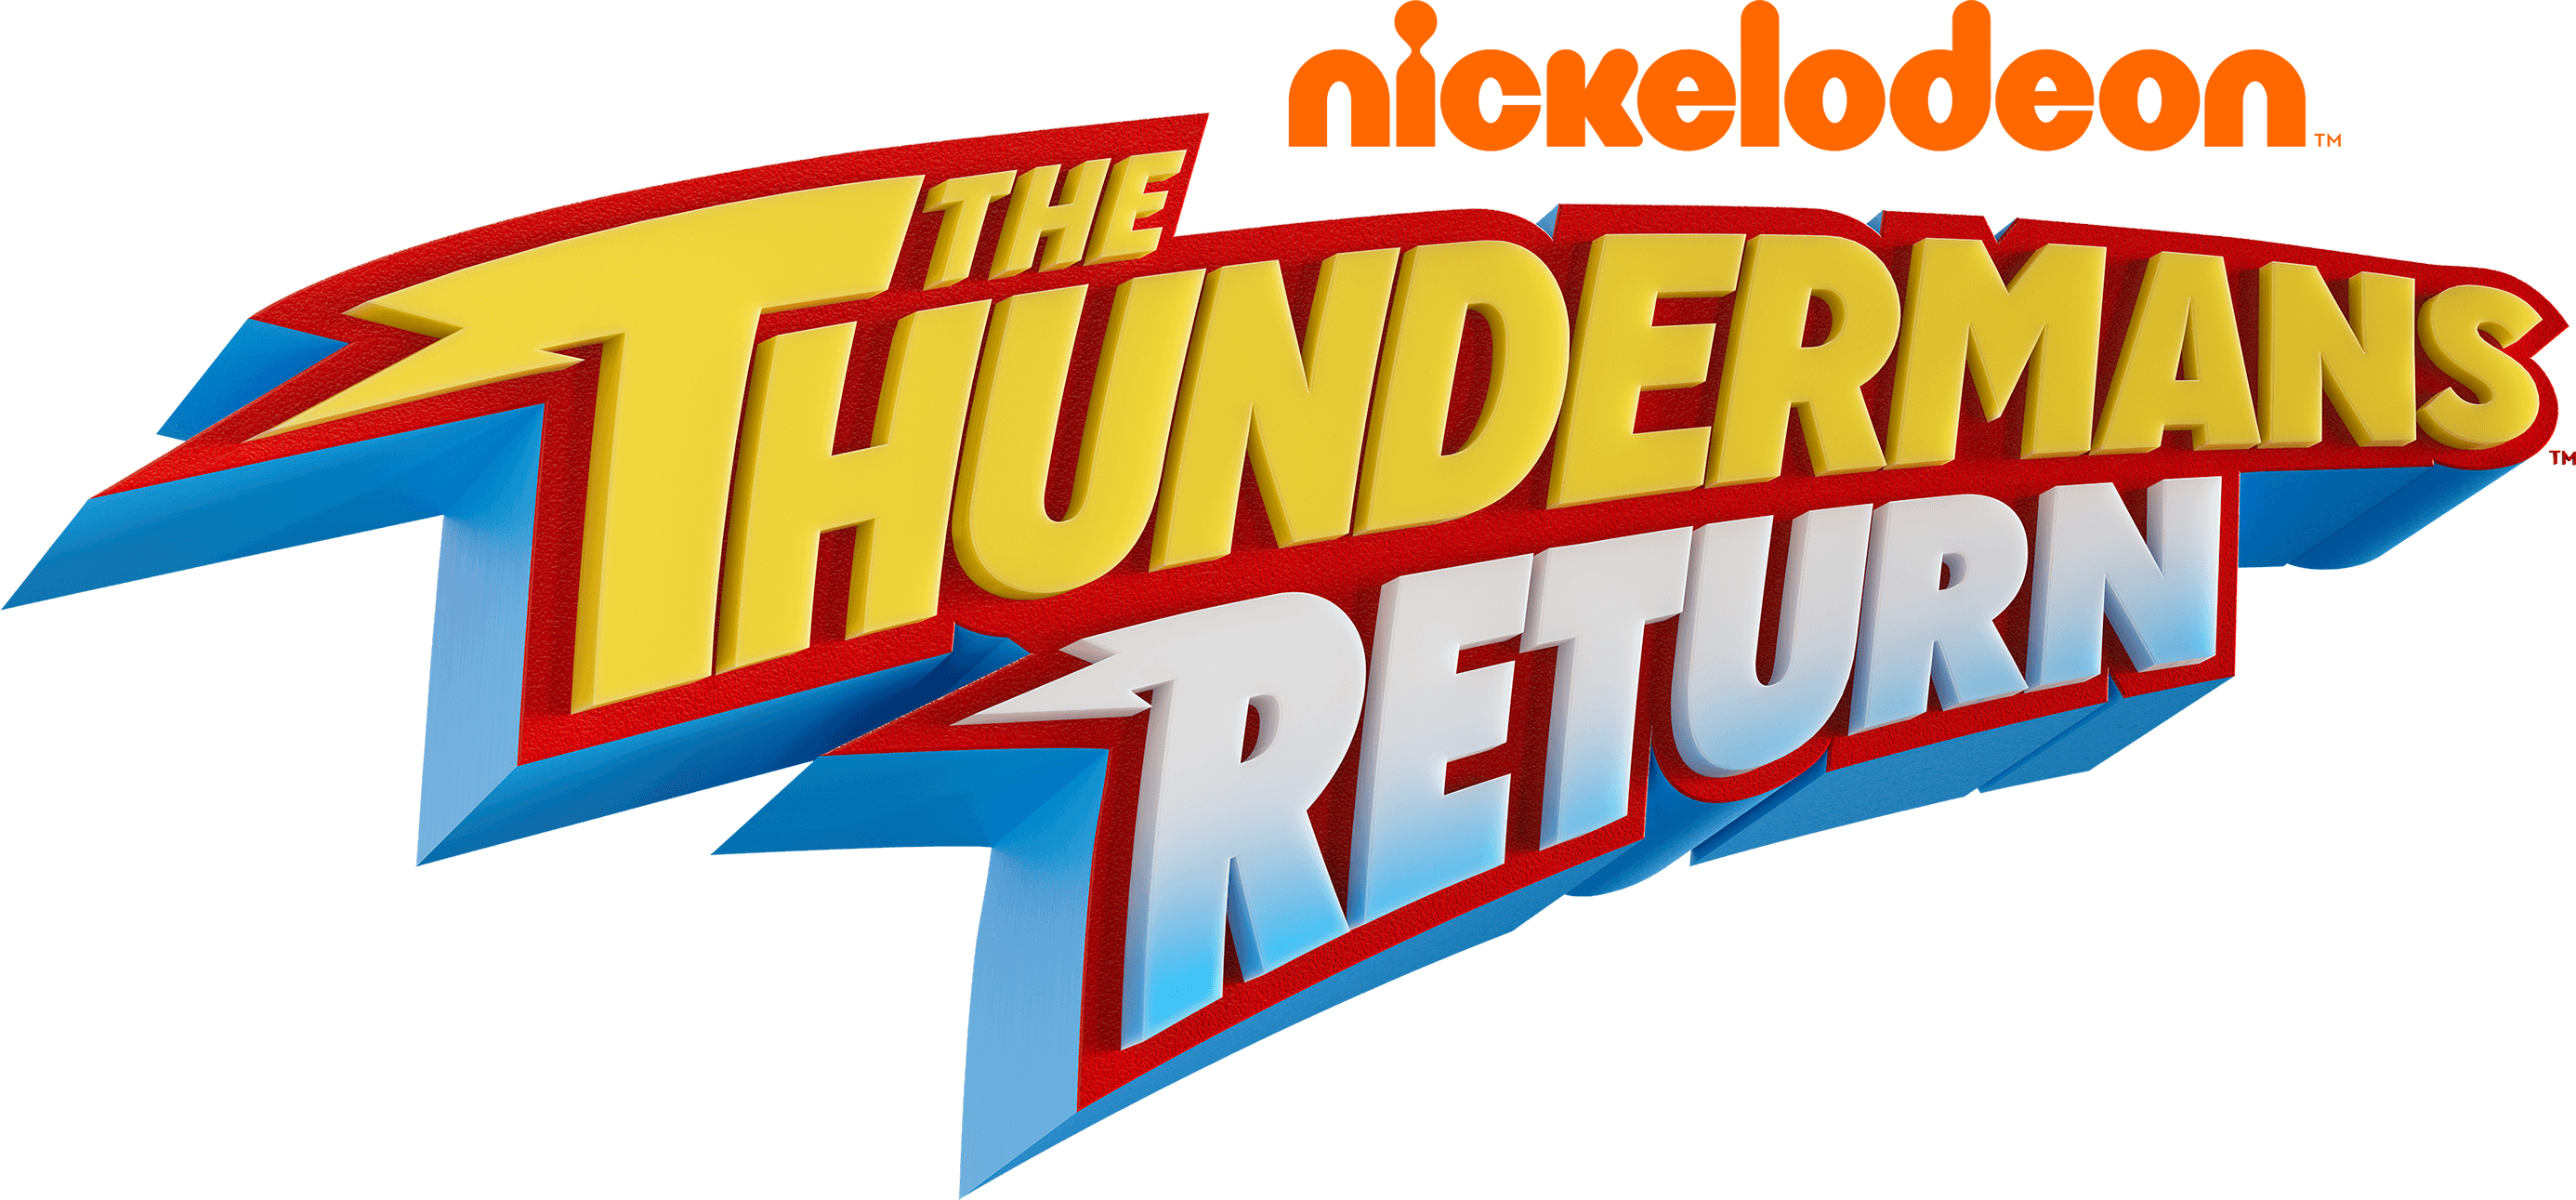 The Thundermans Return logo